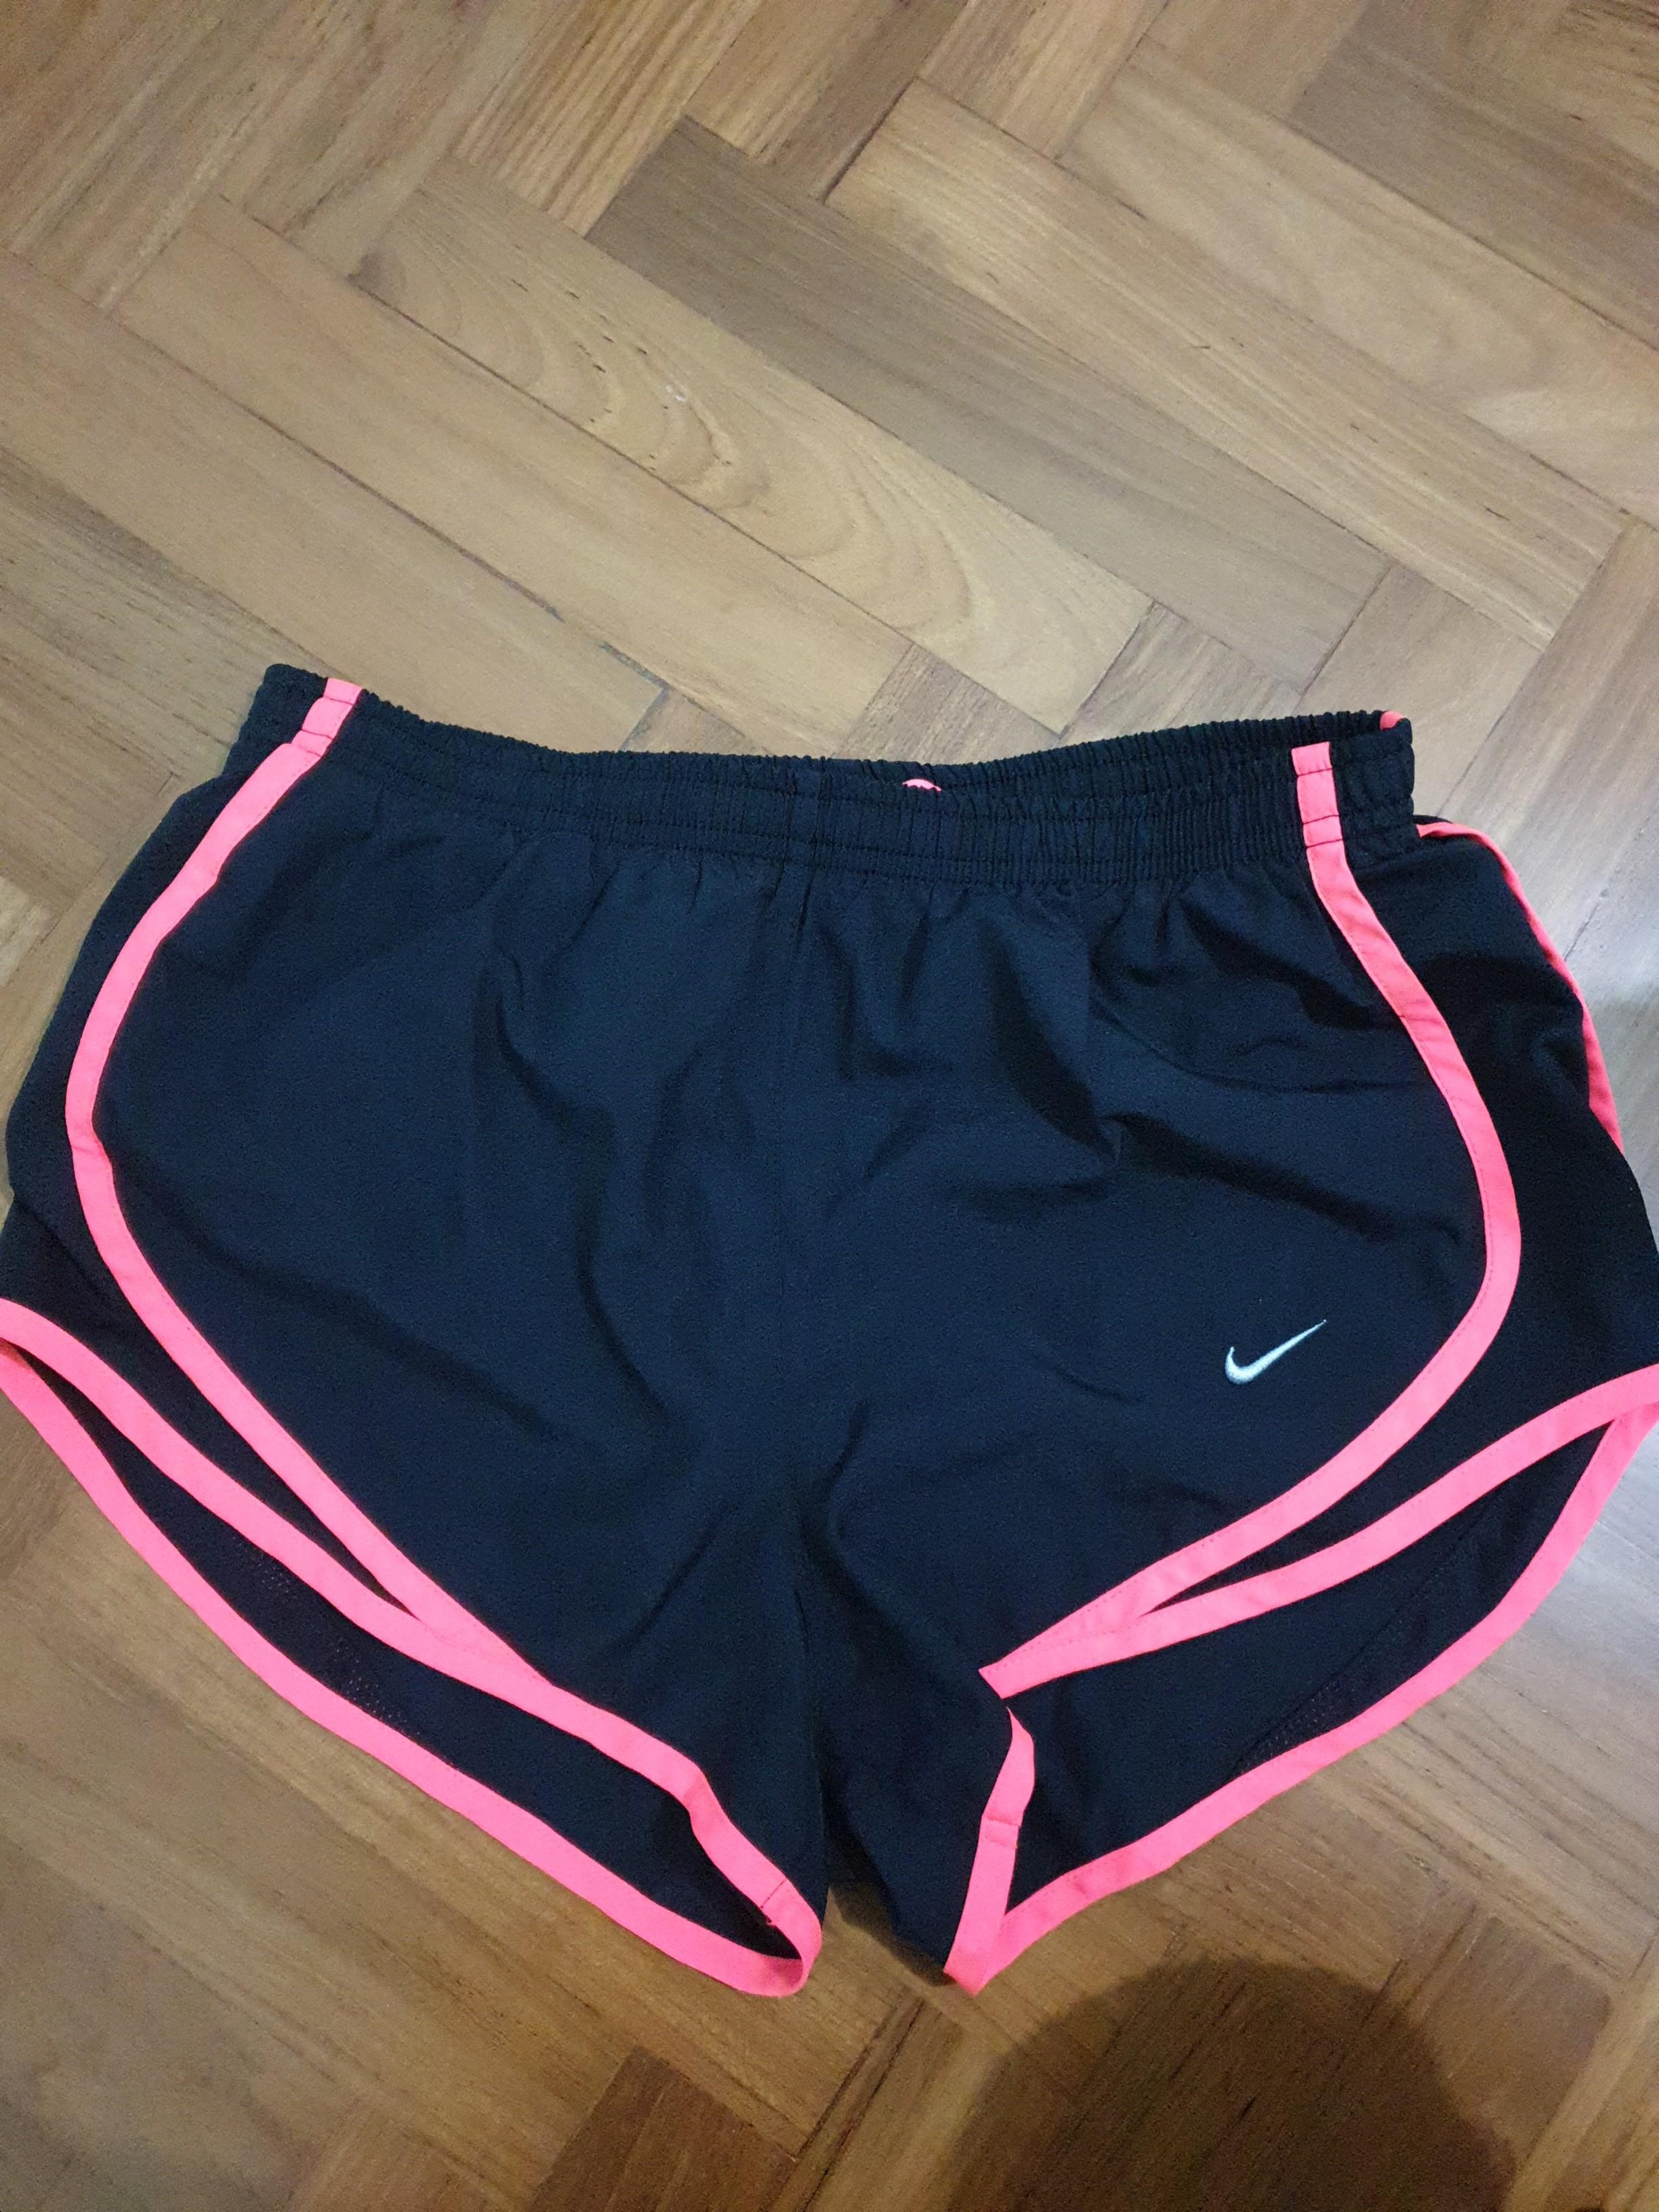 nike neon pink shorts